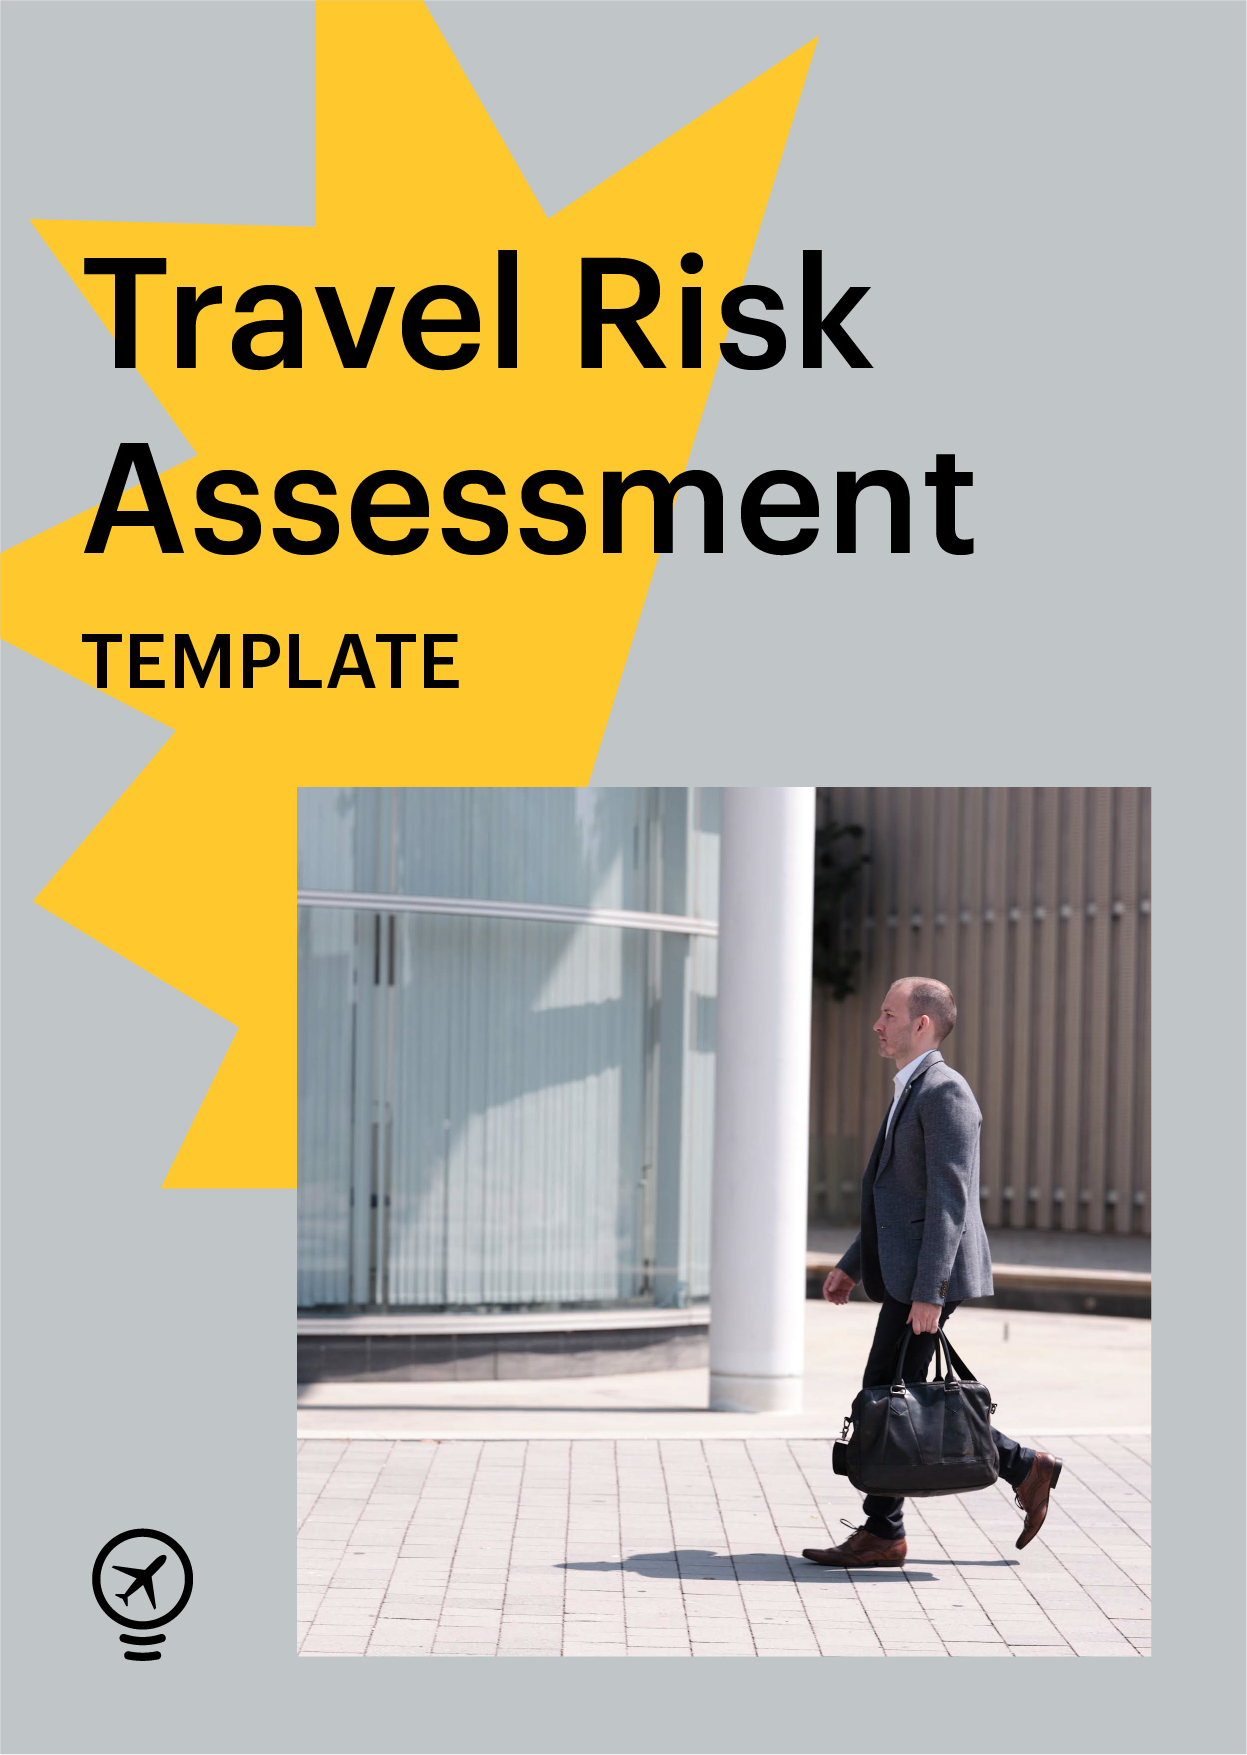 Travel risk assessment template